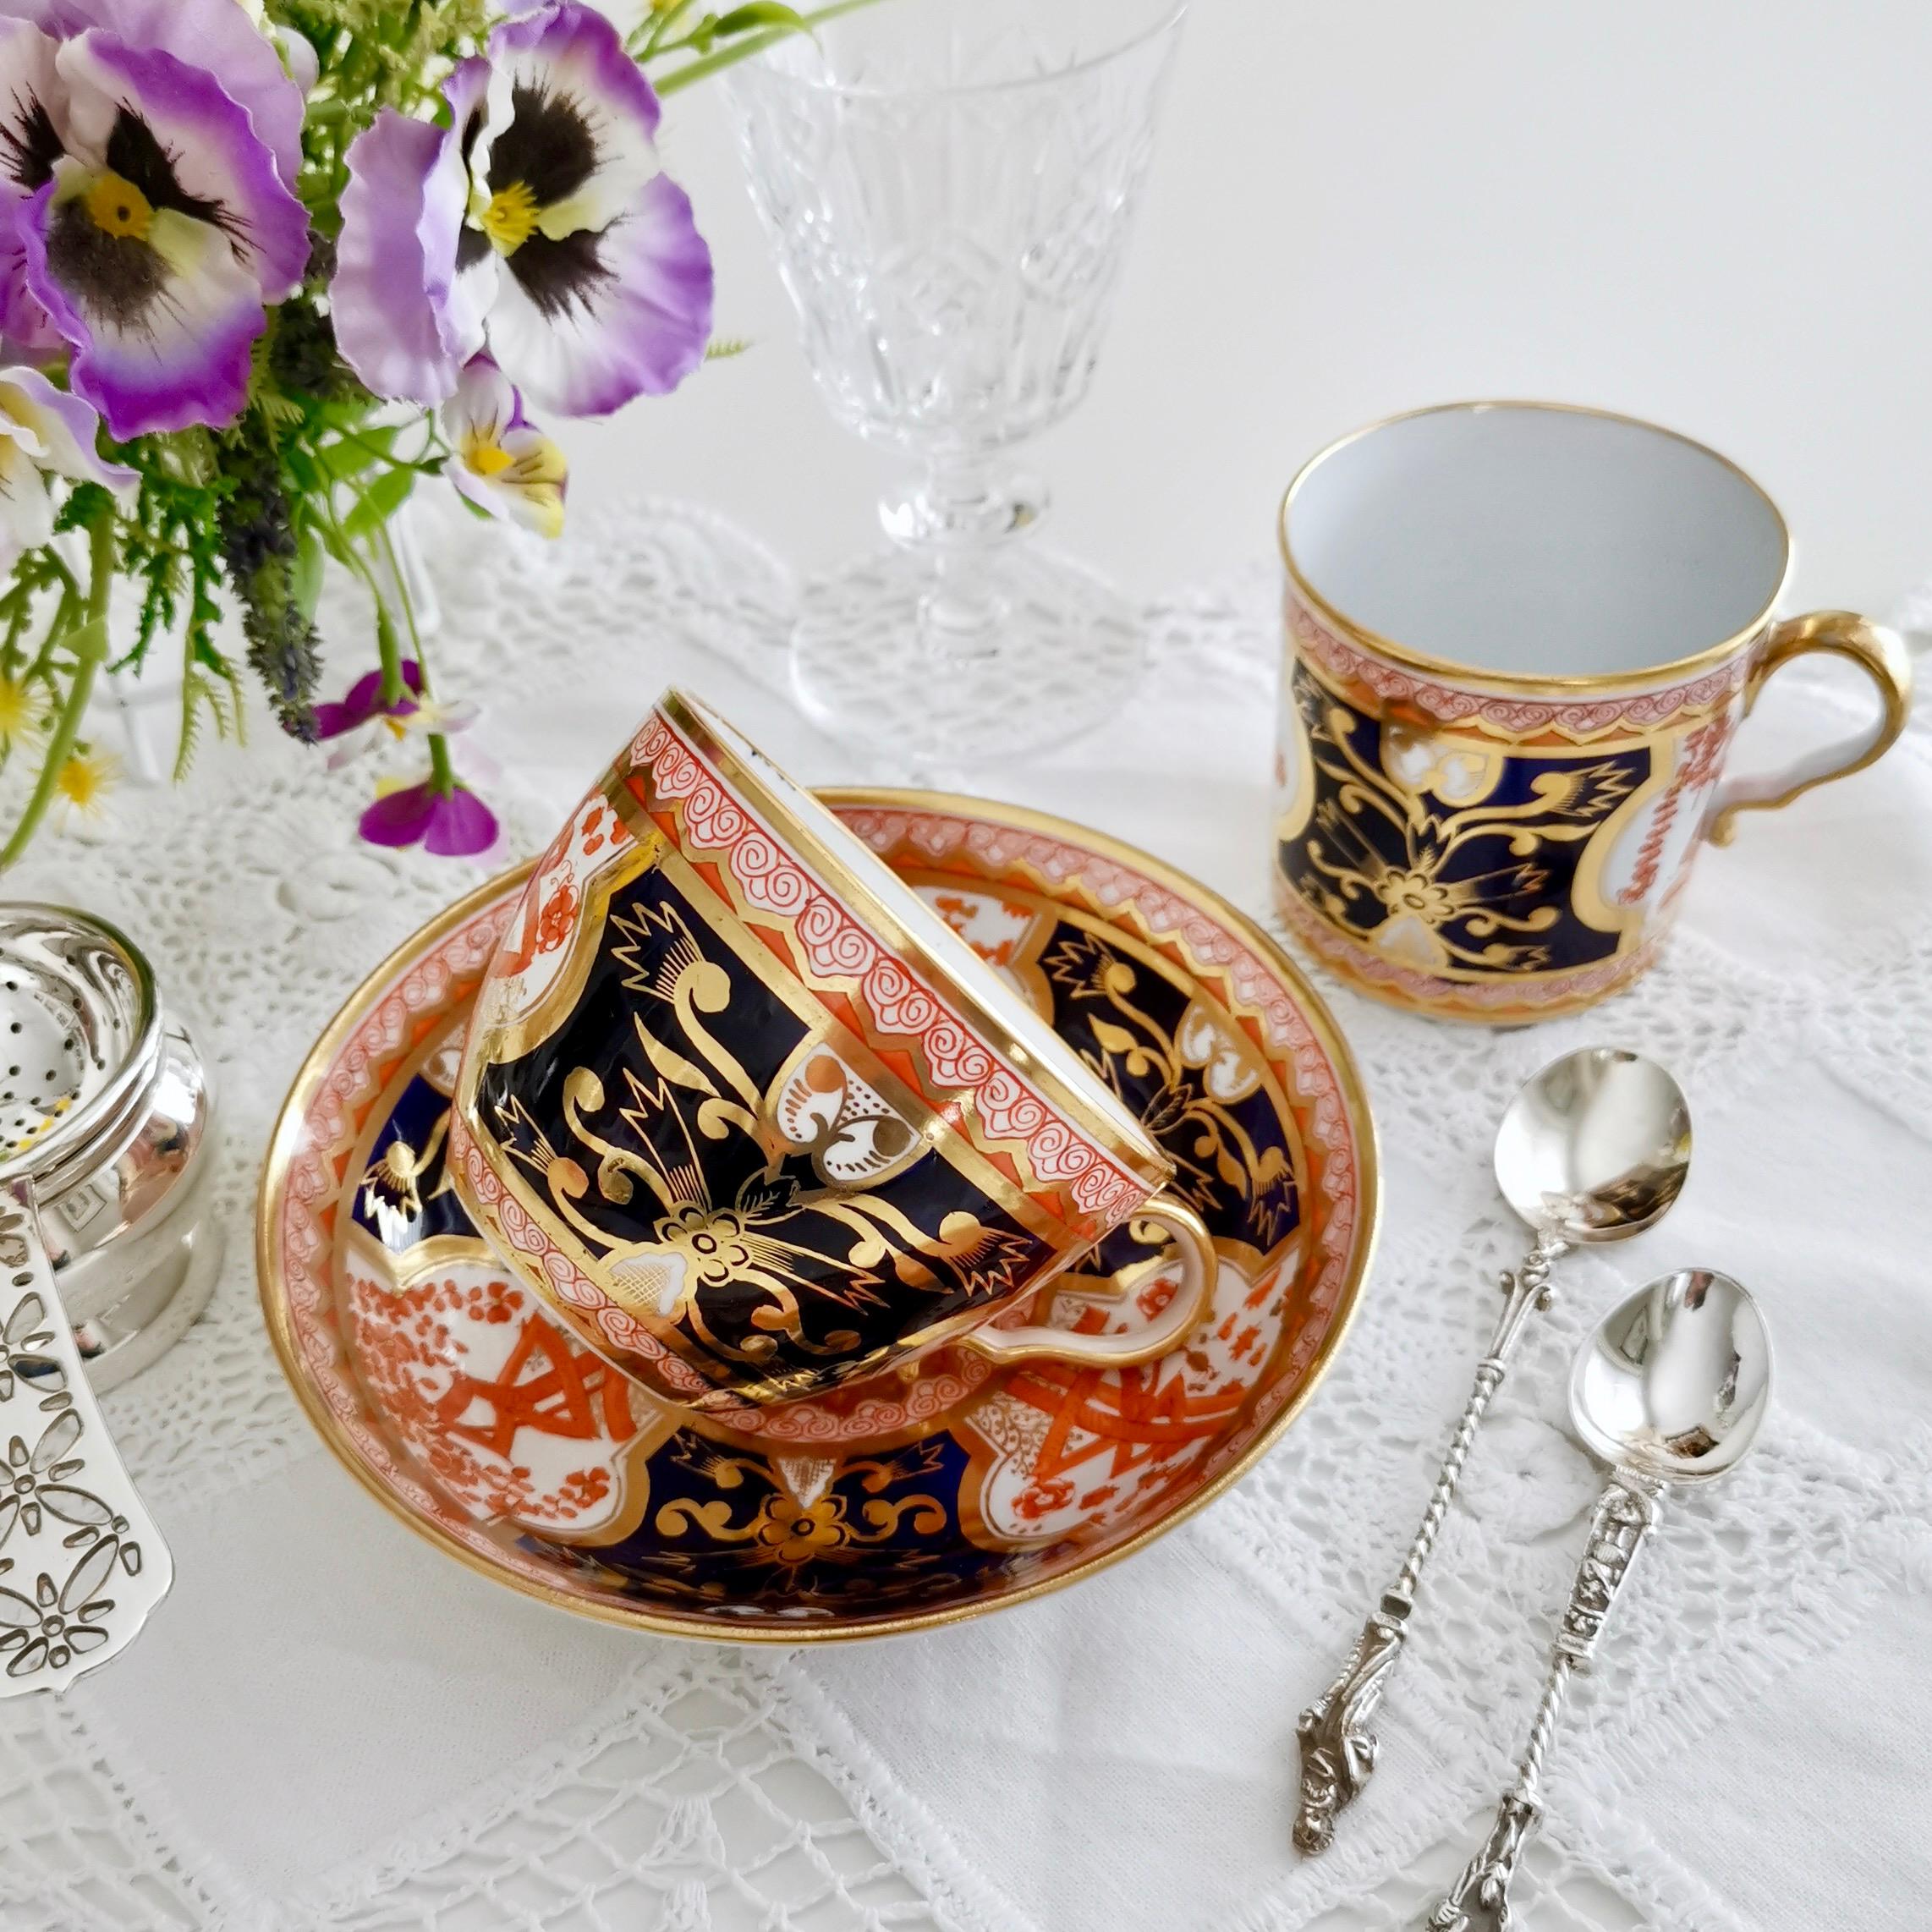 Il s'agit d'une magnifique tasse à thé orpheline fabriquée par Spode vers 1810. Il porte un magnifique motif Imari d'inspiration japonaise.

Spode fut le grand pionnier des potiers géorgiens en Angleterre. Vers 1800, il a mis au point la recette